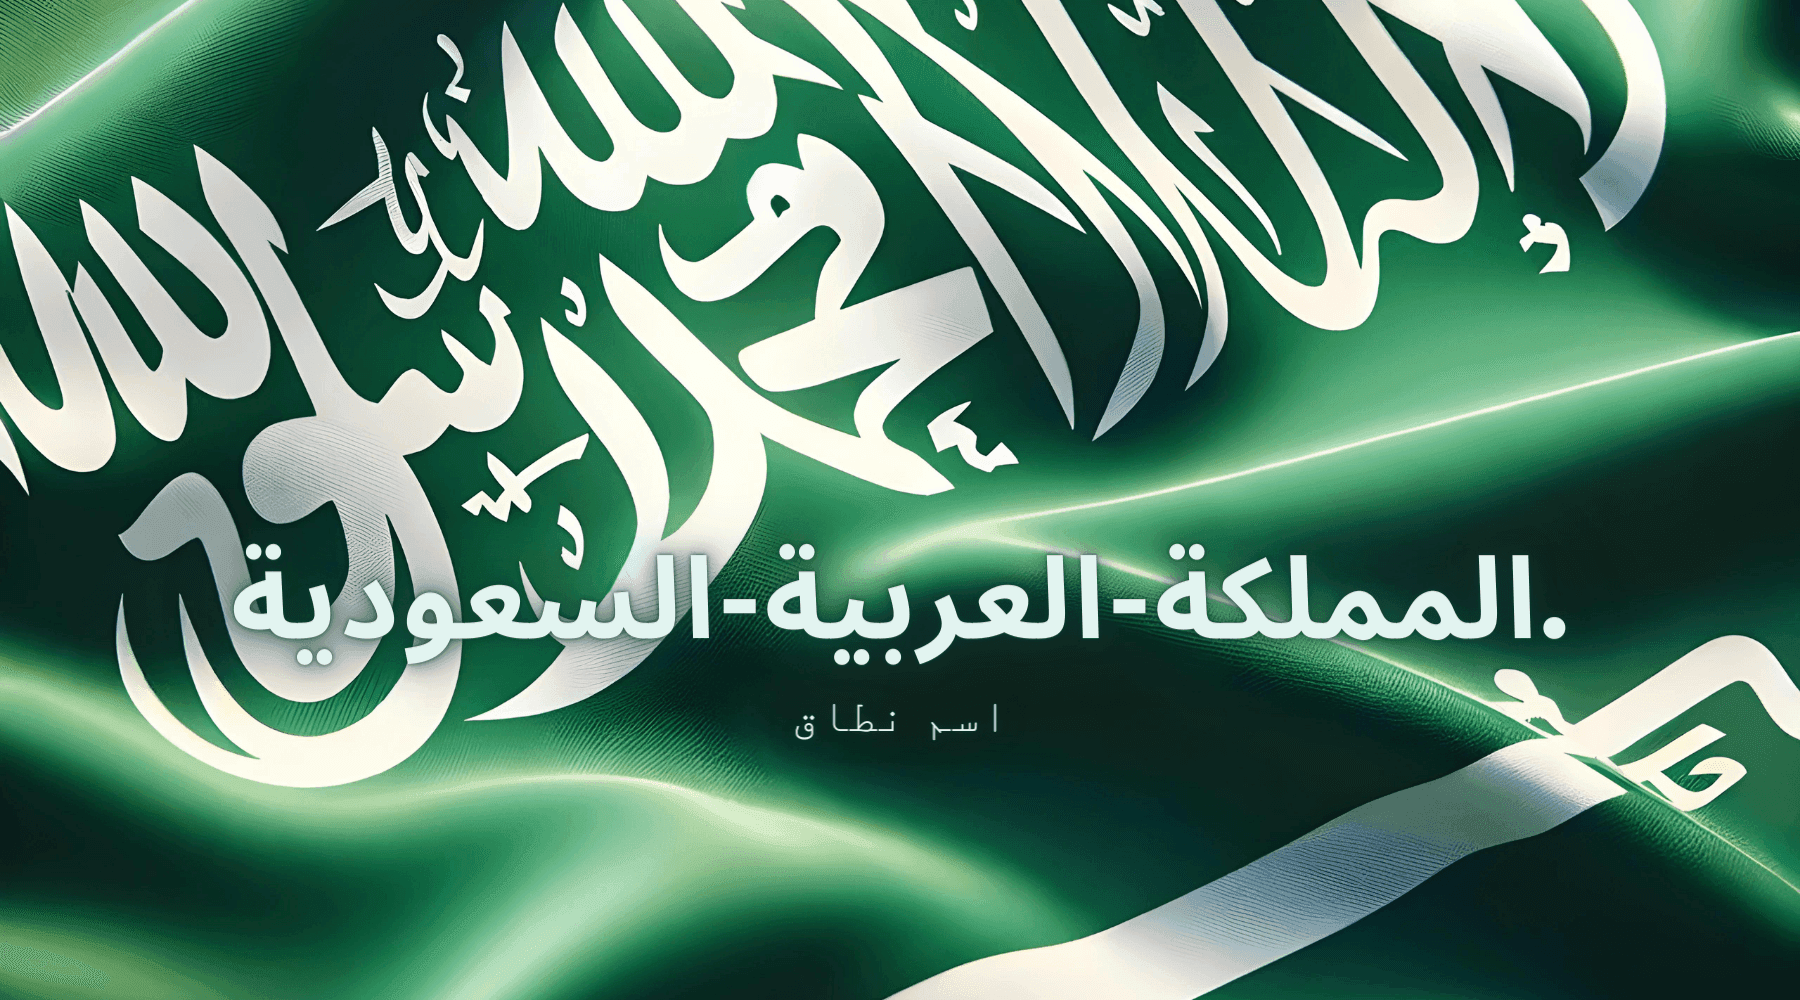 المملكة-العربية-السعودية background image